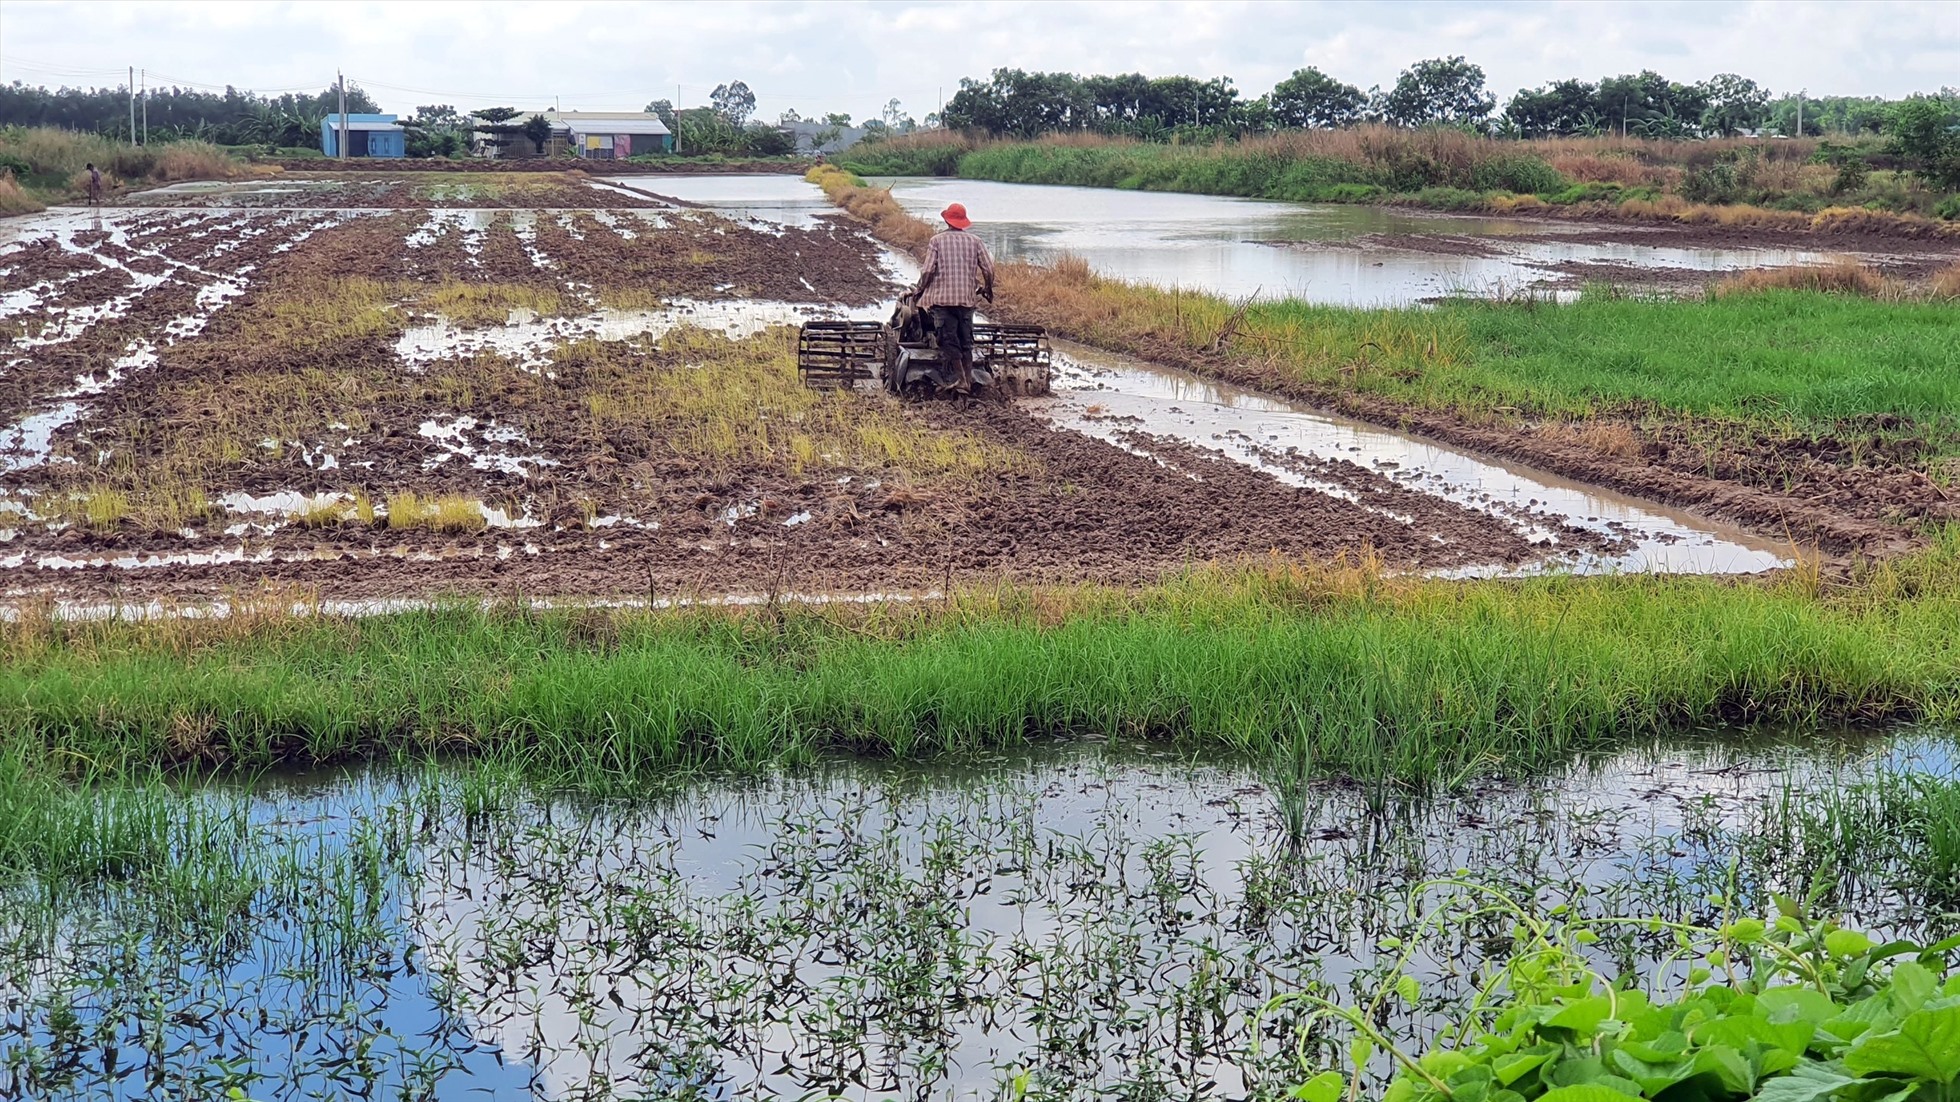 Thấy đất trống, người dân đem náy cày phá đất chuẩn bị trồng lúa. Ảnh: Nhật Hồ